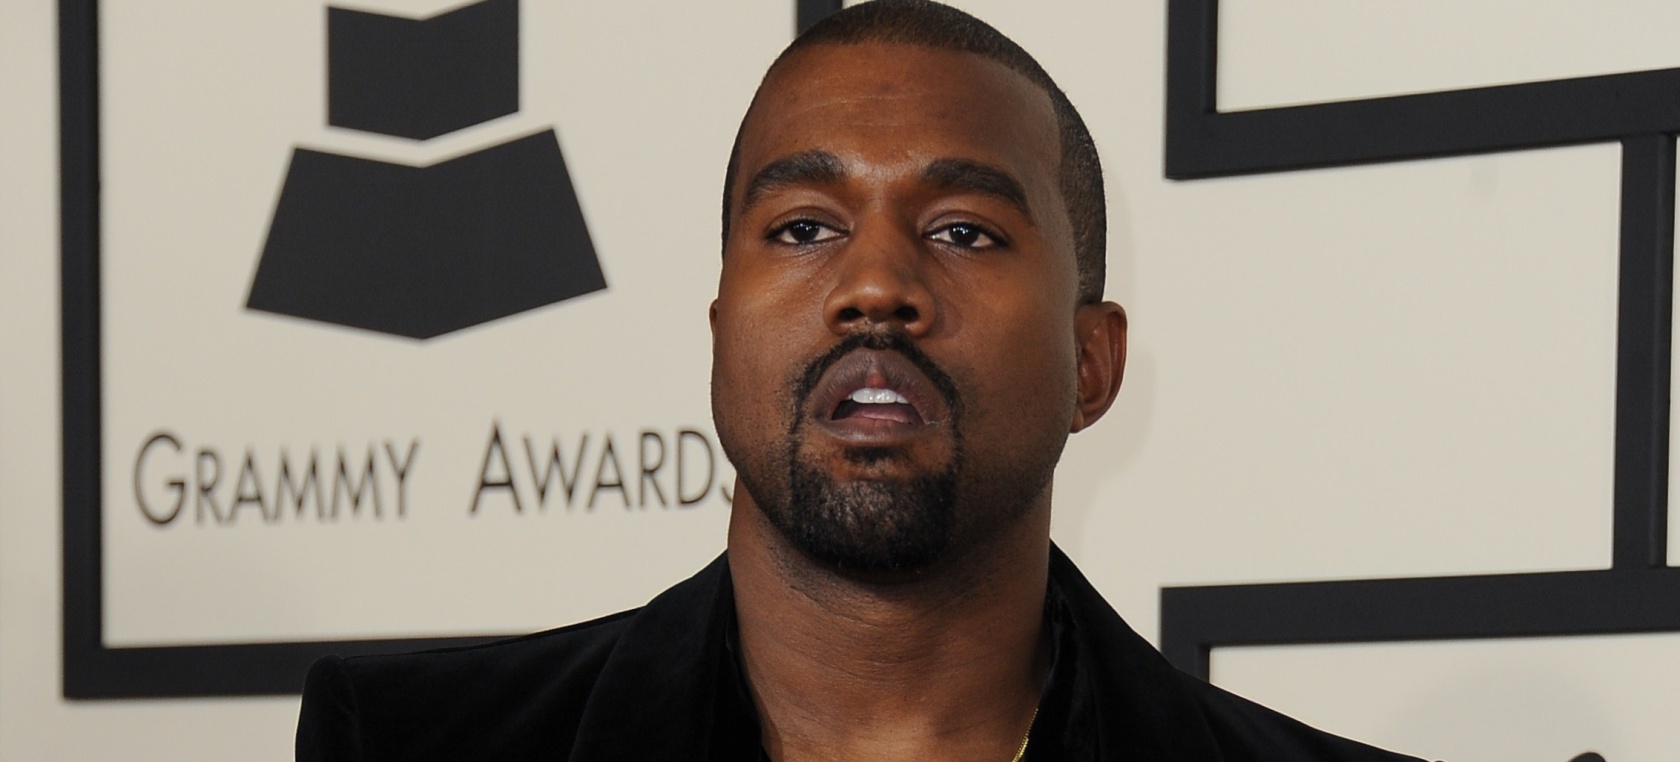 Del premio roto de Adele a la cancelación a Kanye West: las principales polémicas de los Premios Grammy